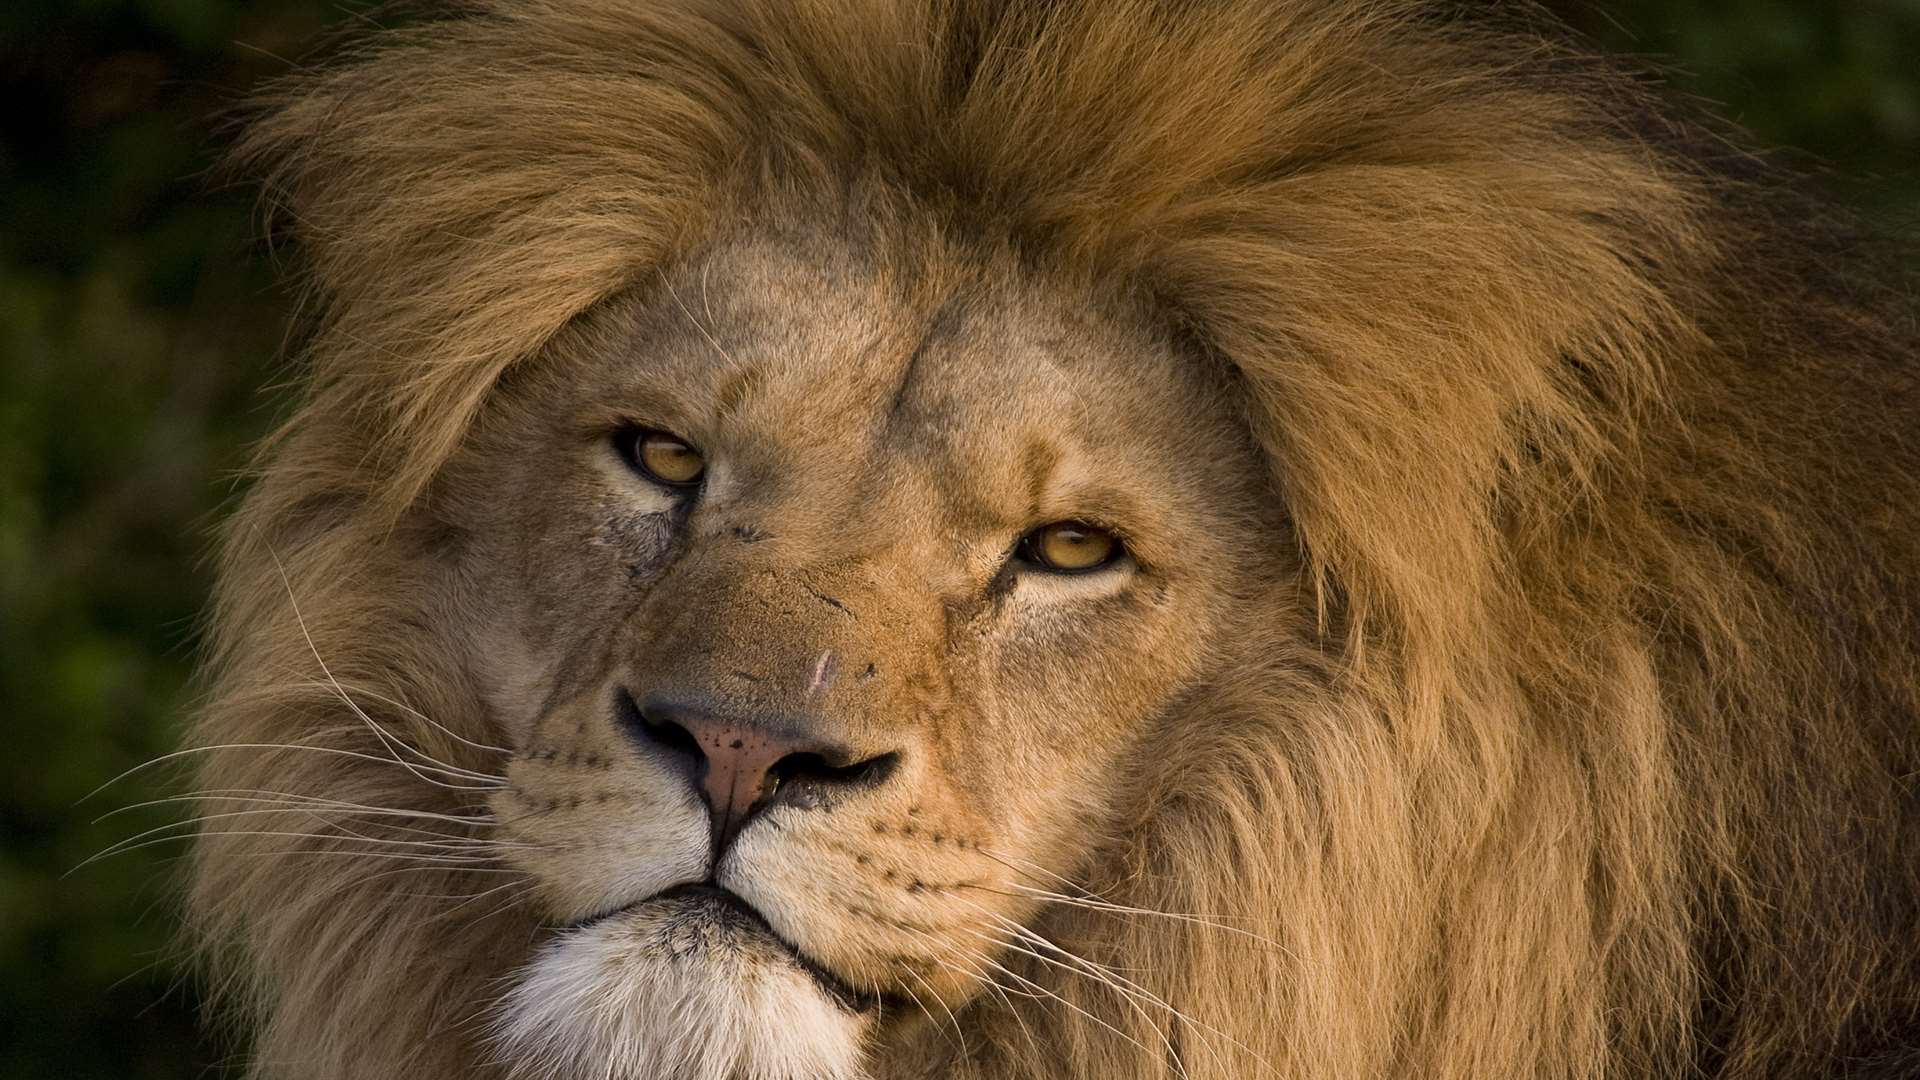 A lion at the Big Cat Sanctuary